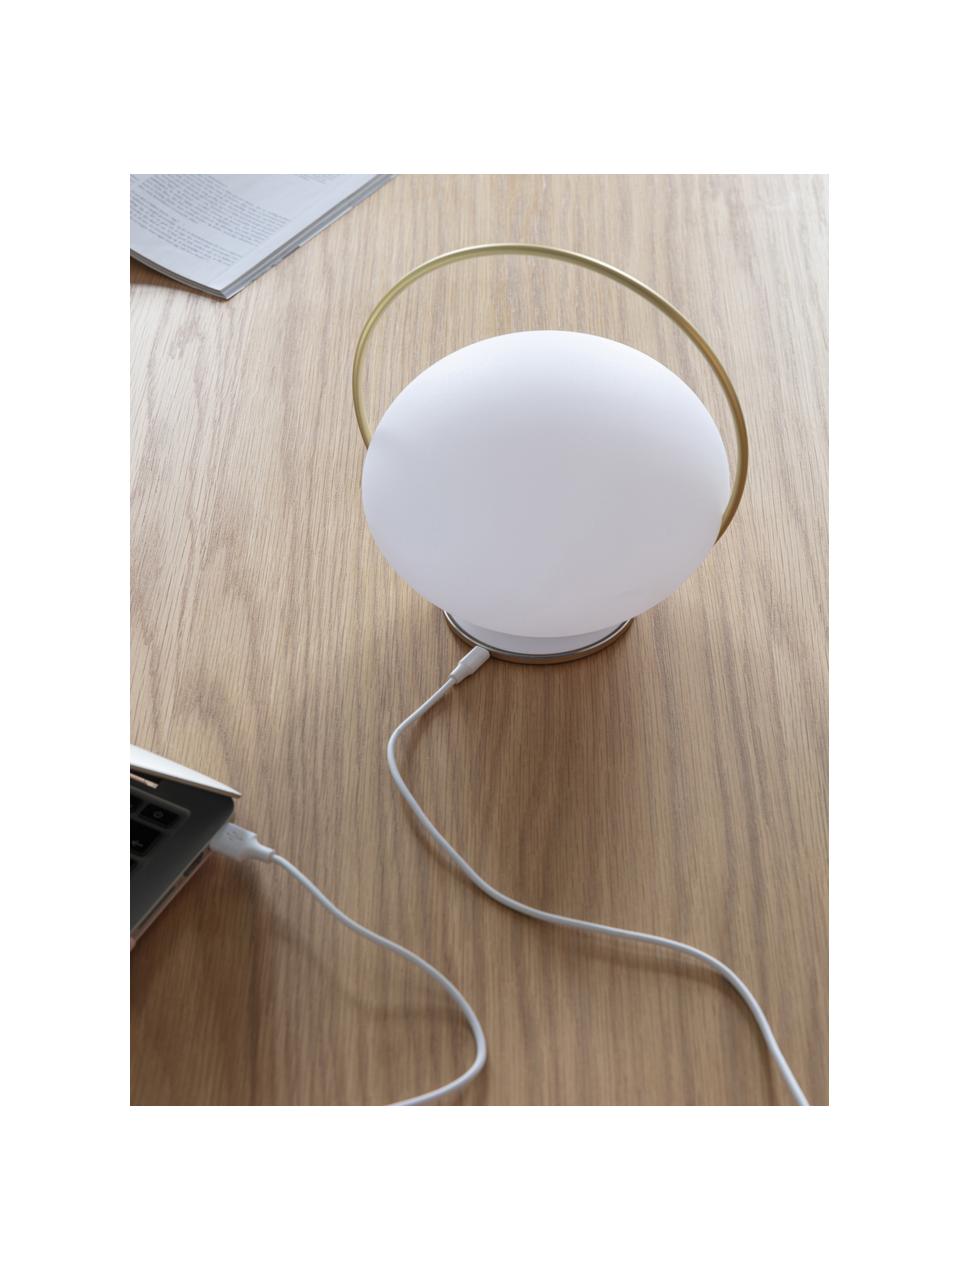 Lámpara de mesa para exterior LED regulable Orbit, portátil con puerto USB, Pantalla: plástico, Estructura: silicona, metal, revestid, Blanco, dorado, Ø 20 x Al 19 cm